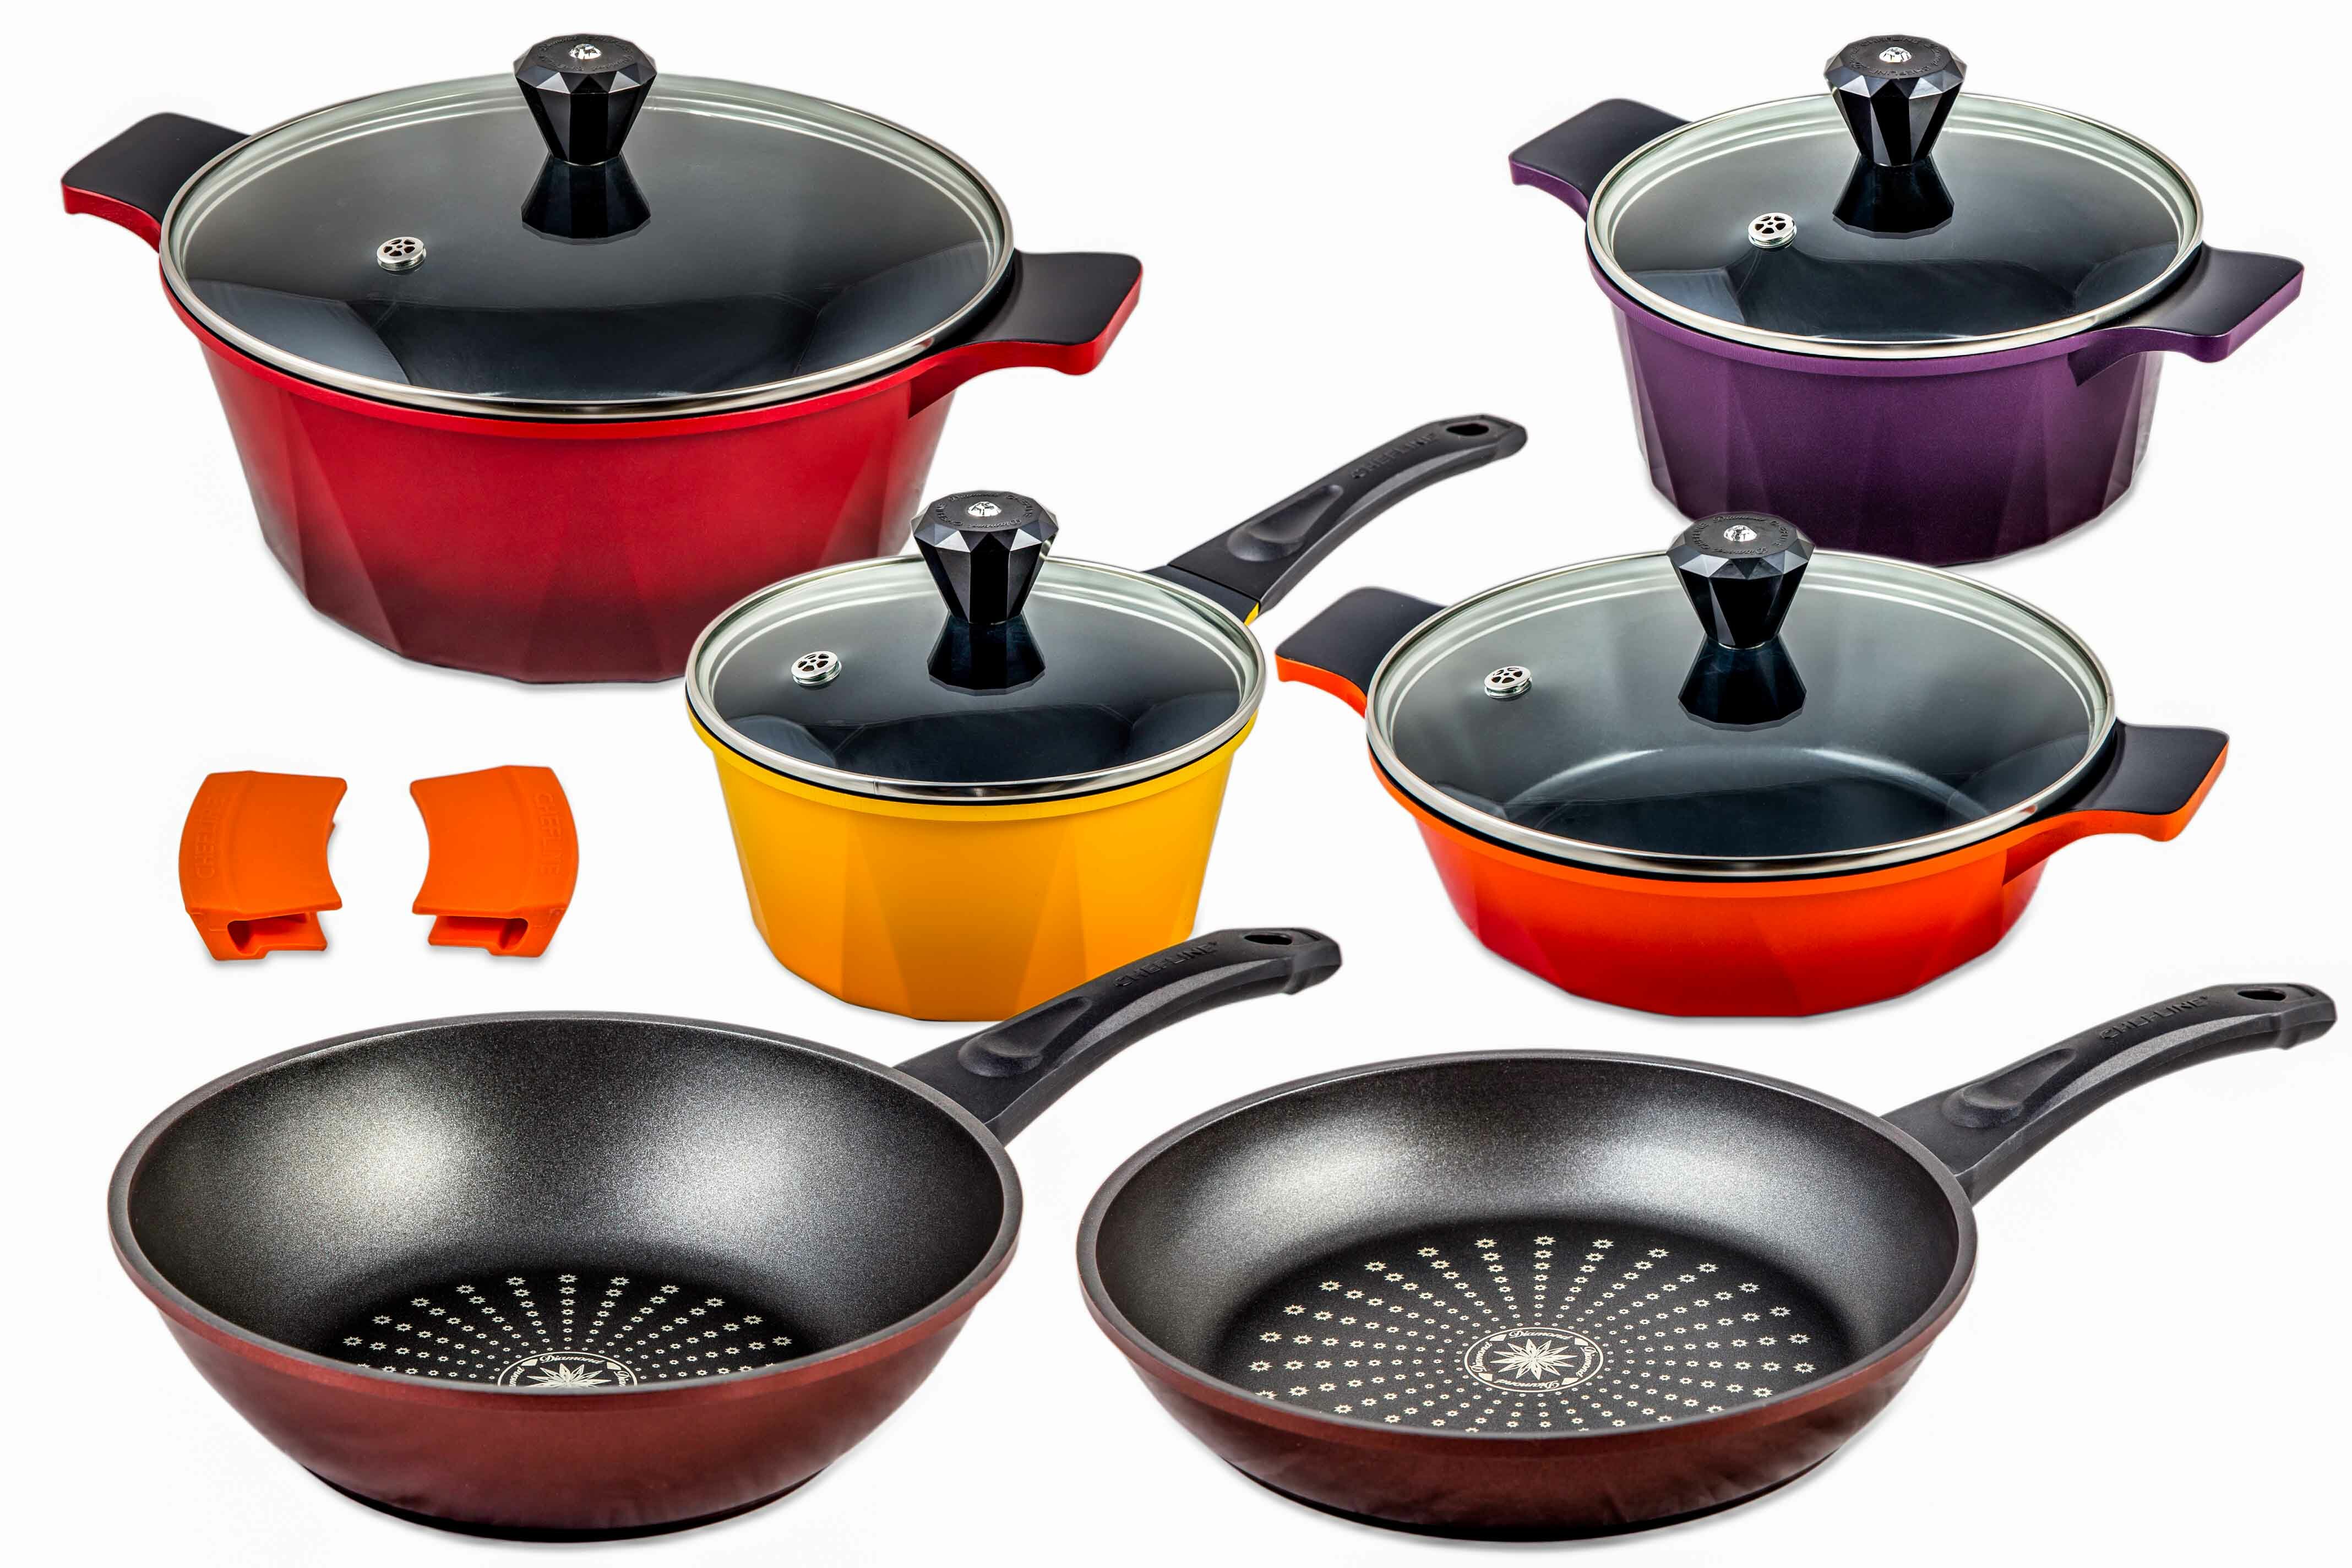 https://assets.wfcdn.com/im/71422259/compr-r85/1633/16336444/12-piece-non-stick-enameled-cast-iron-cookware-set.jpg